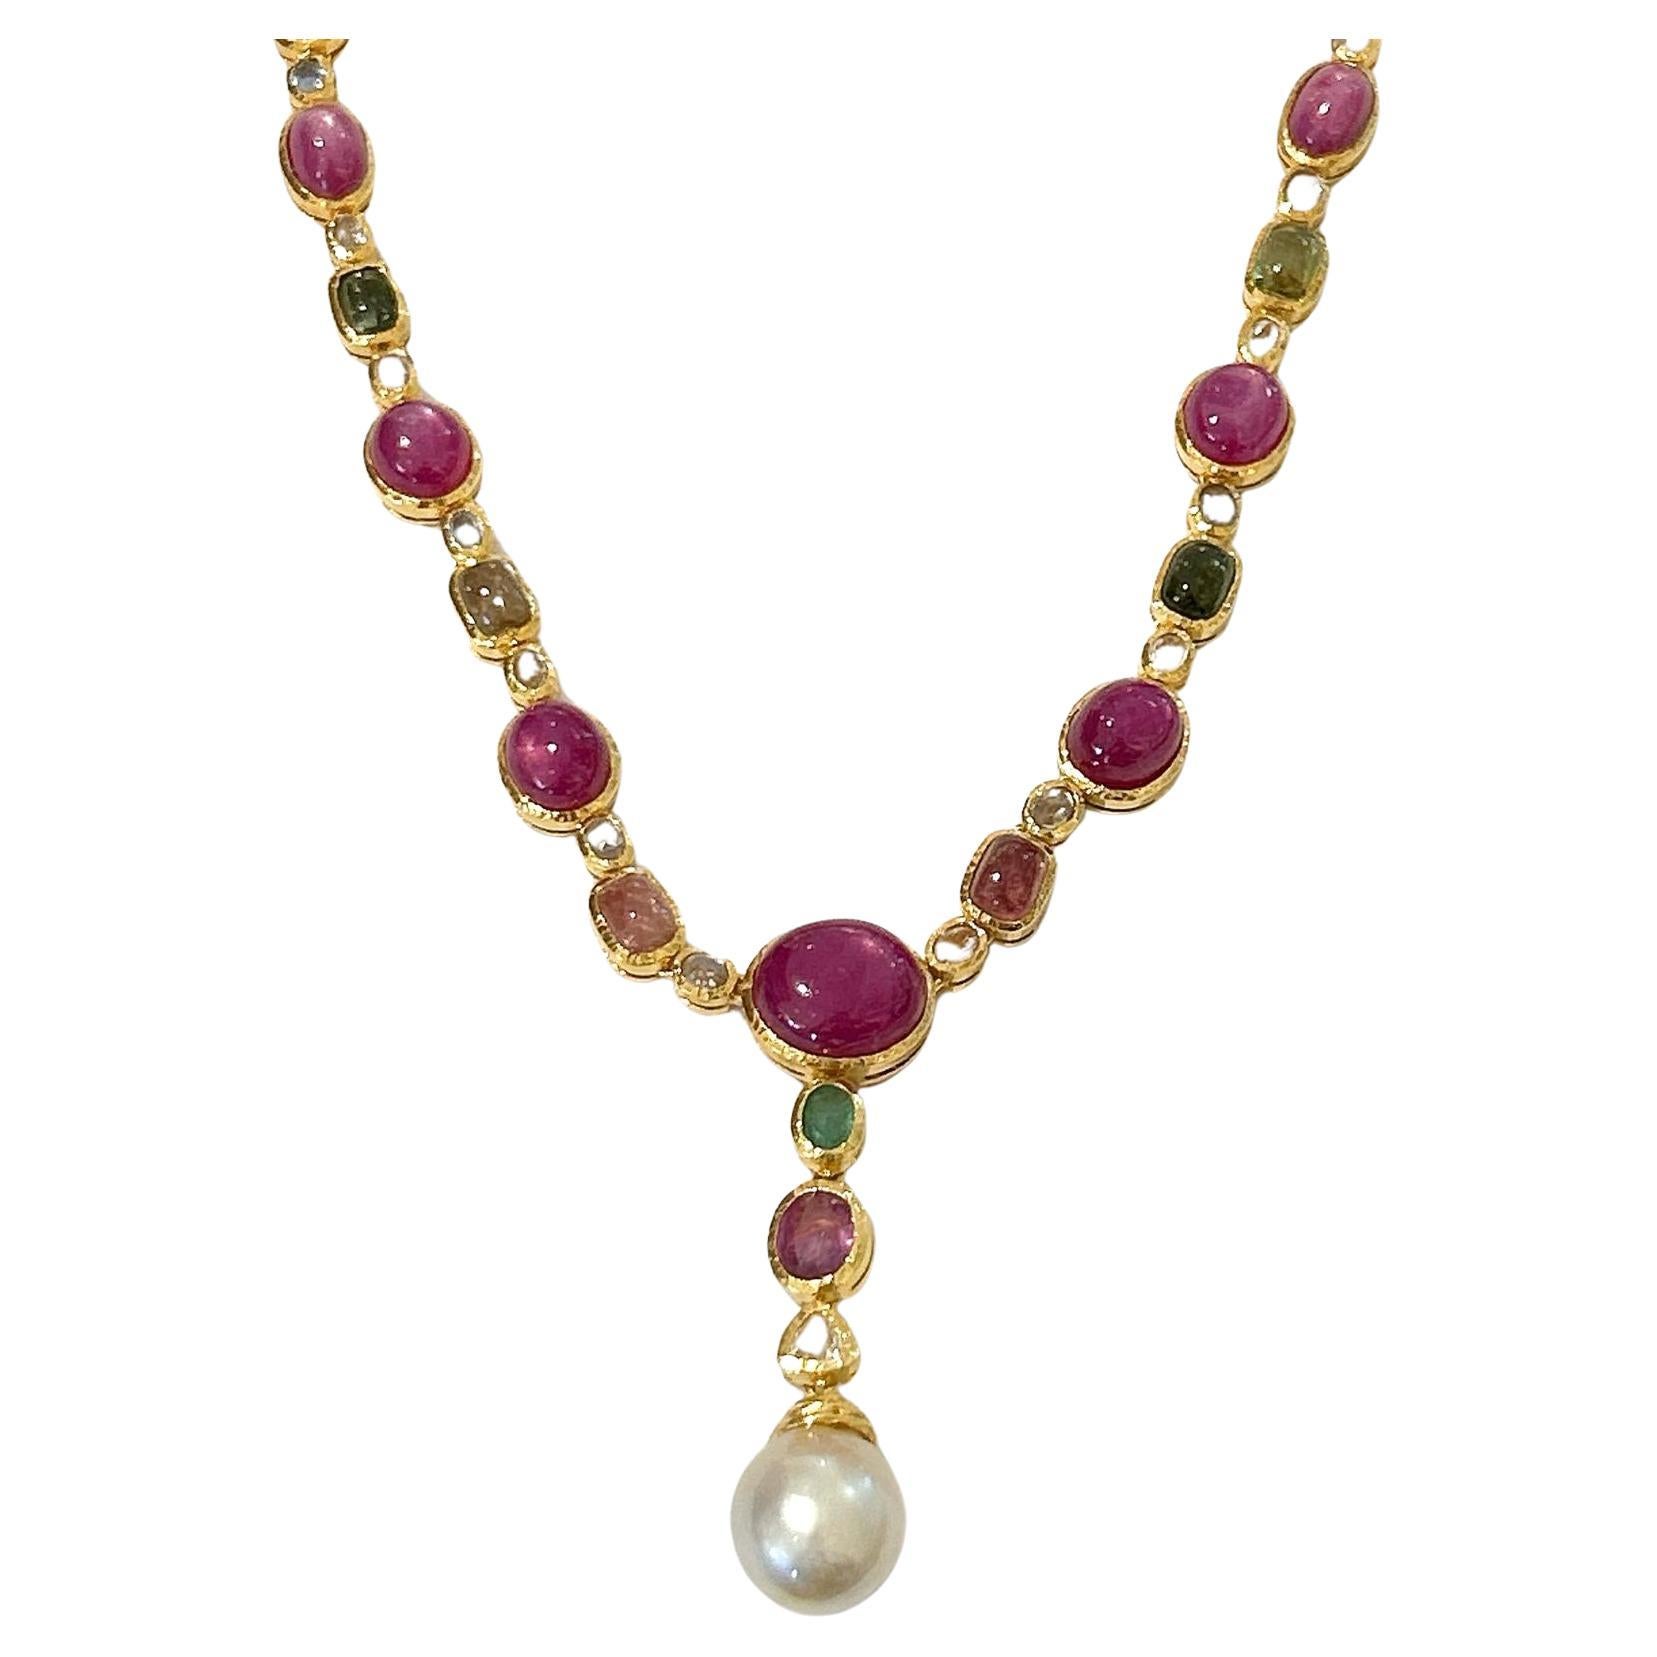 Bochic "Capri" Halskette aus 18 Karat Gold und Silber mit mehreren Saphiren und Rubinen